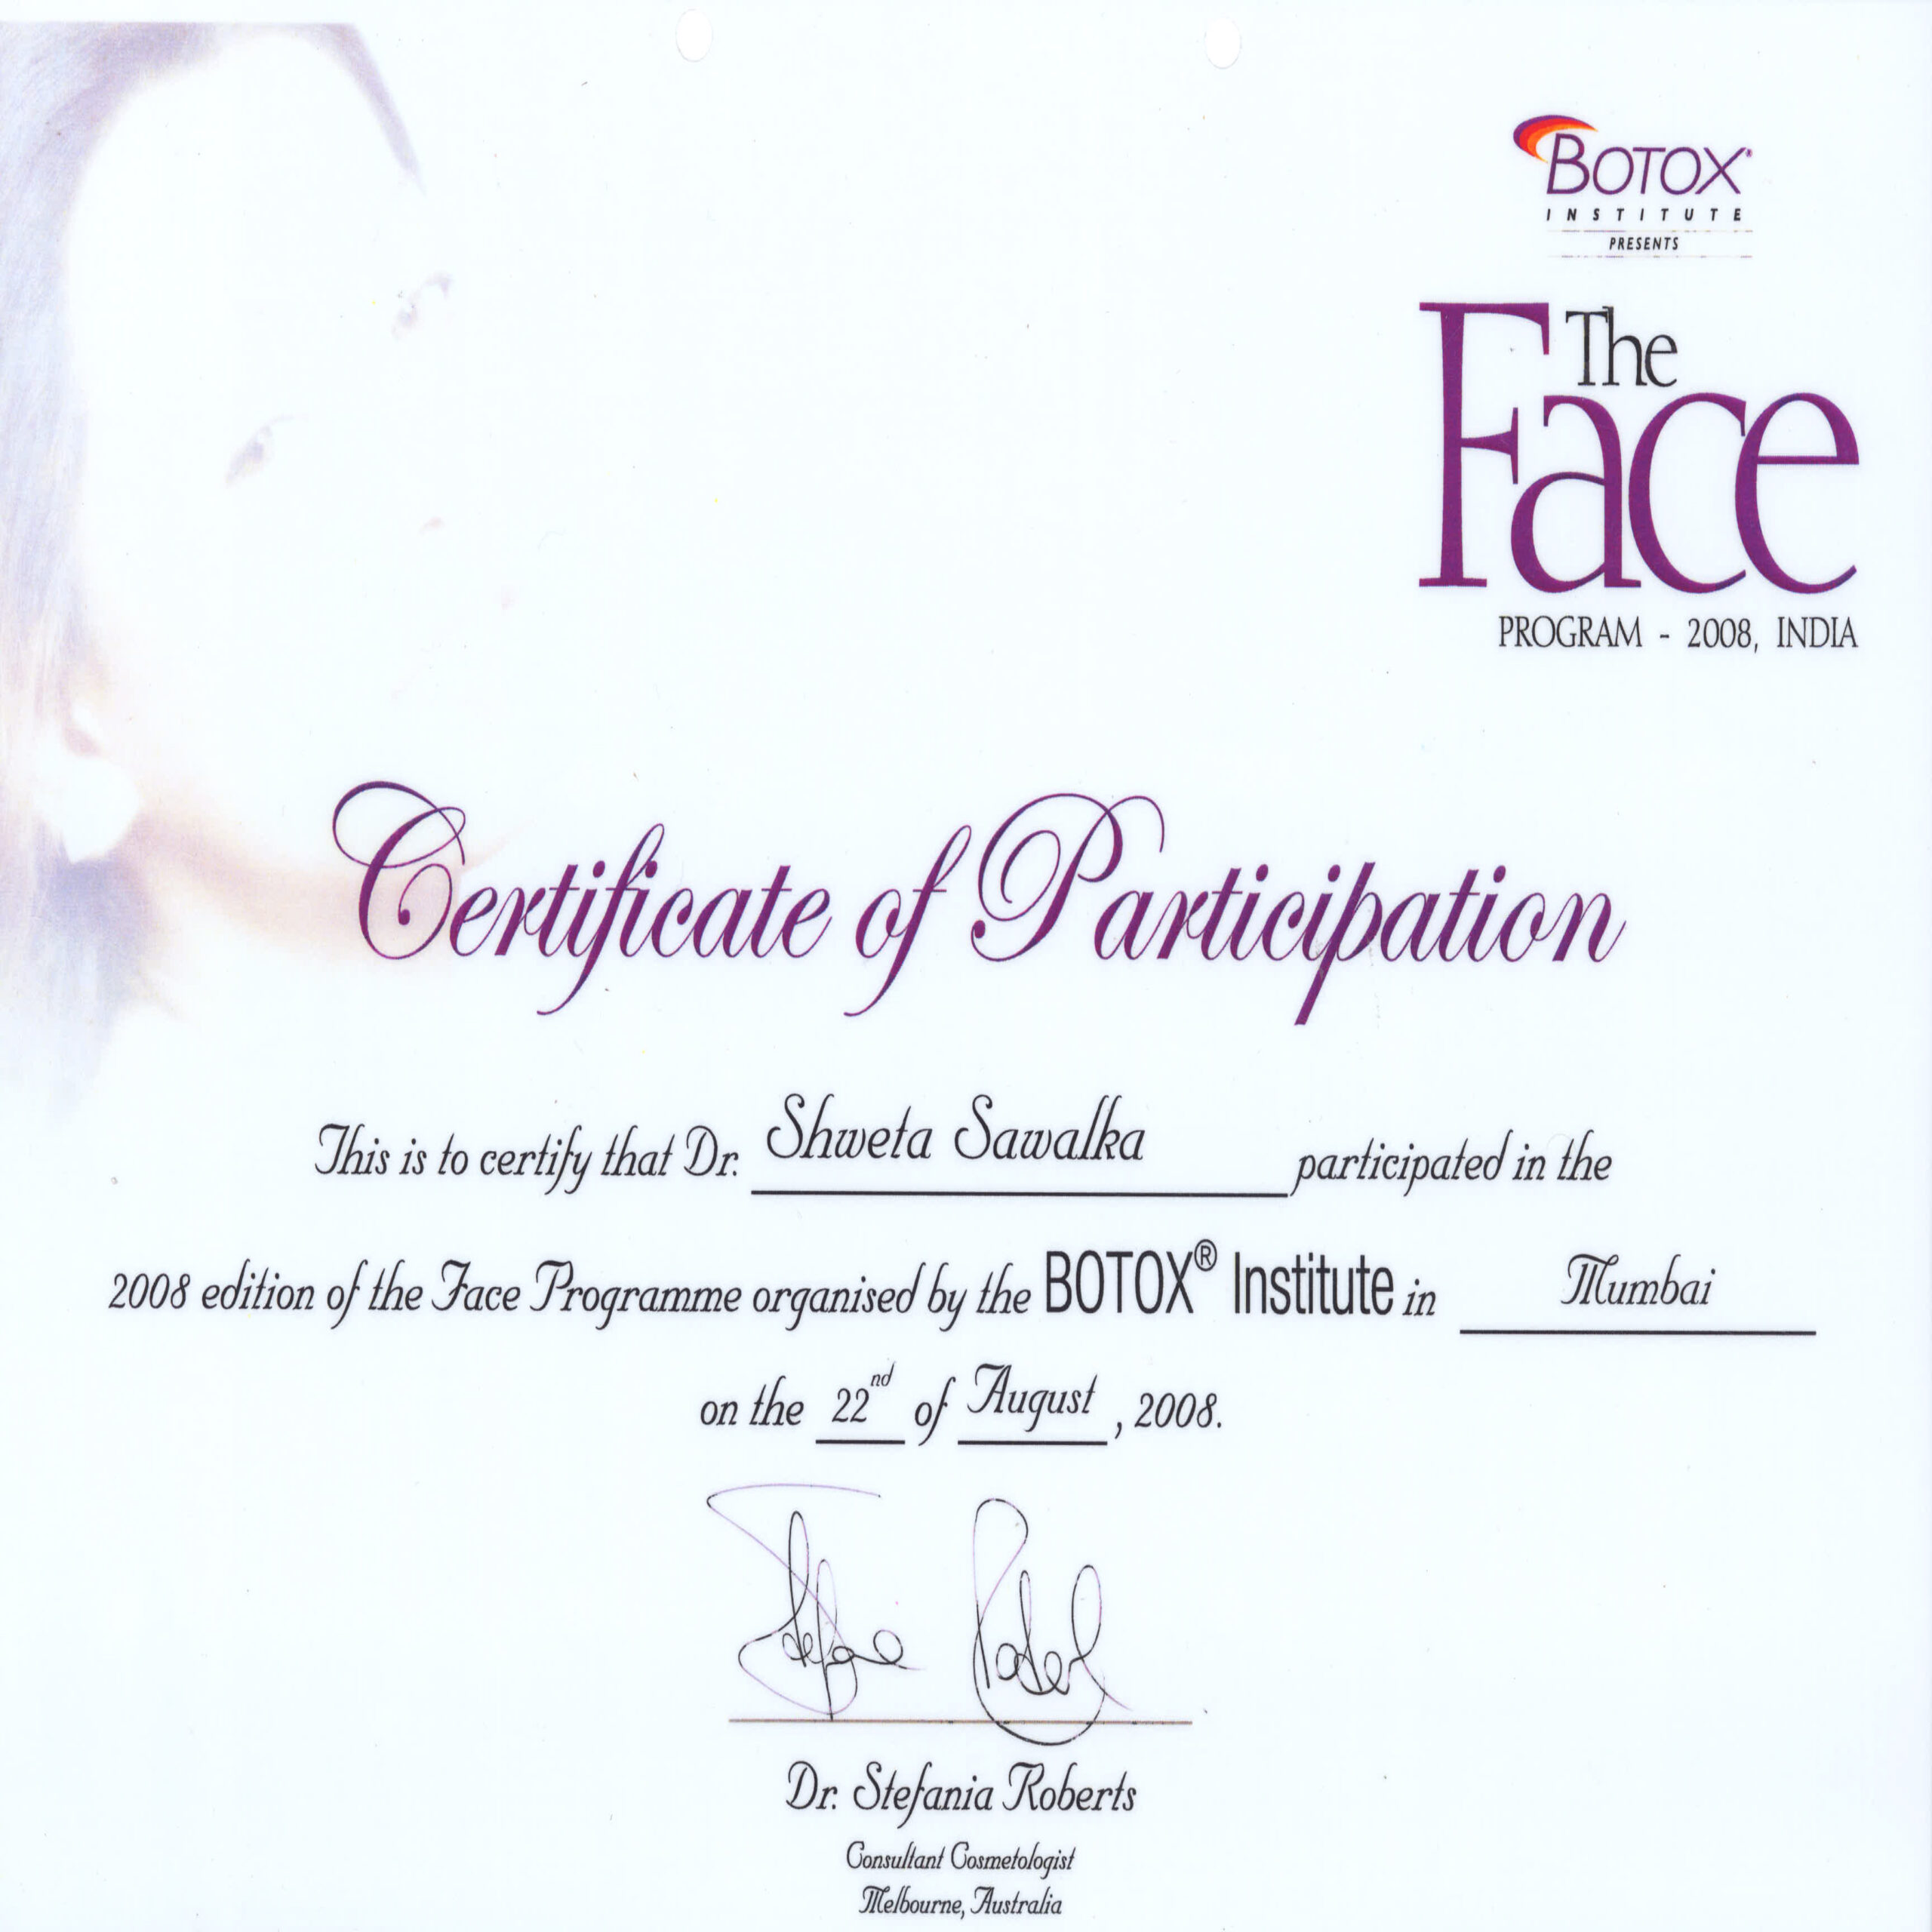 Botox Institute - The Face Program 2008